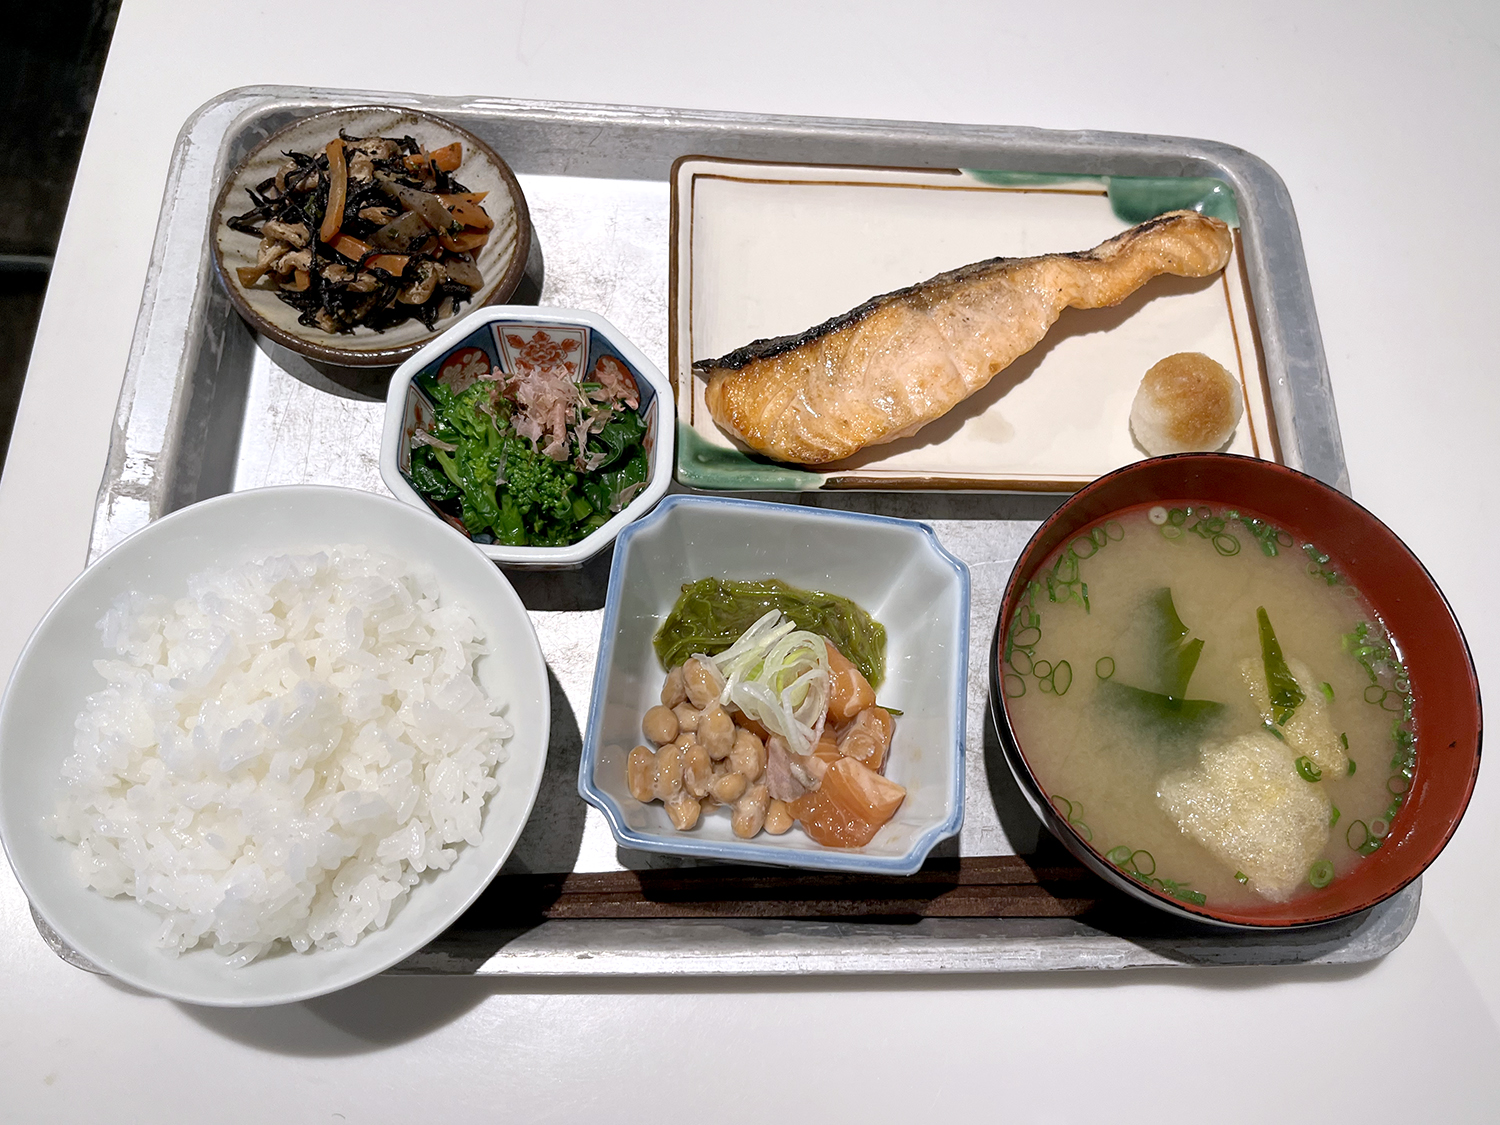 銀シャリ、味噌汁、焼き鮭、菜の花のおひたし、ひじきの紫蘇煮、漬けサーモンと納豆で合計1600円也。